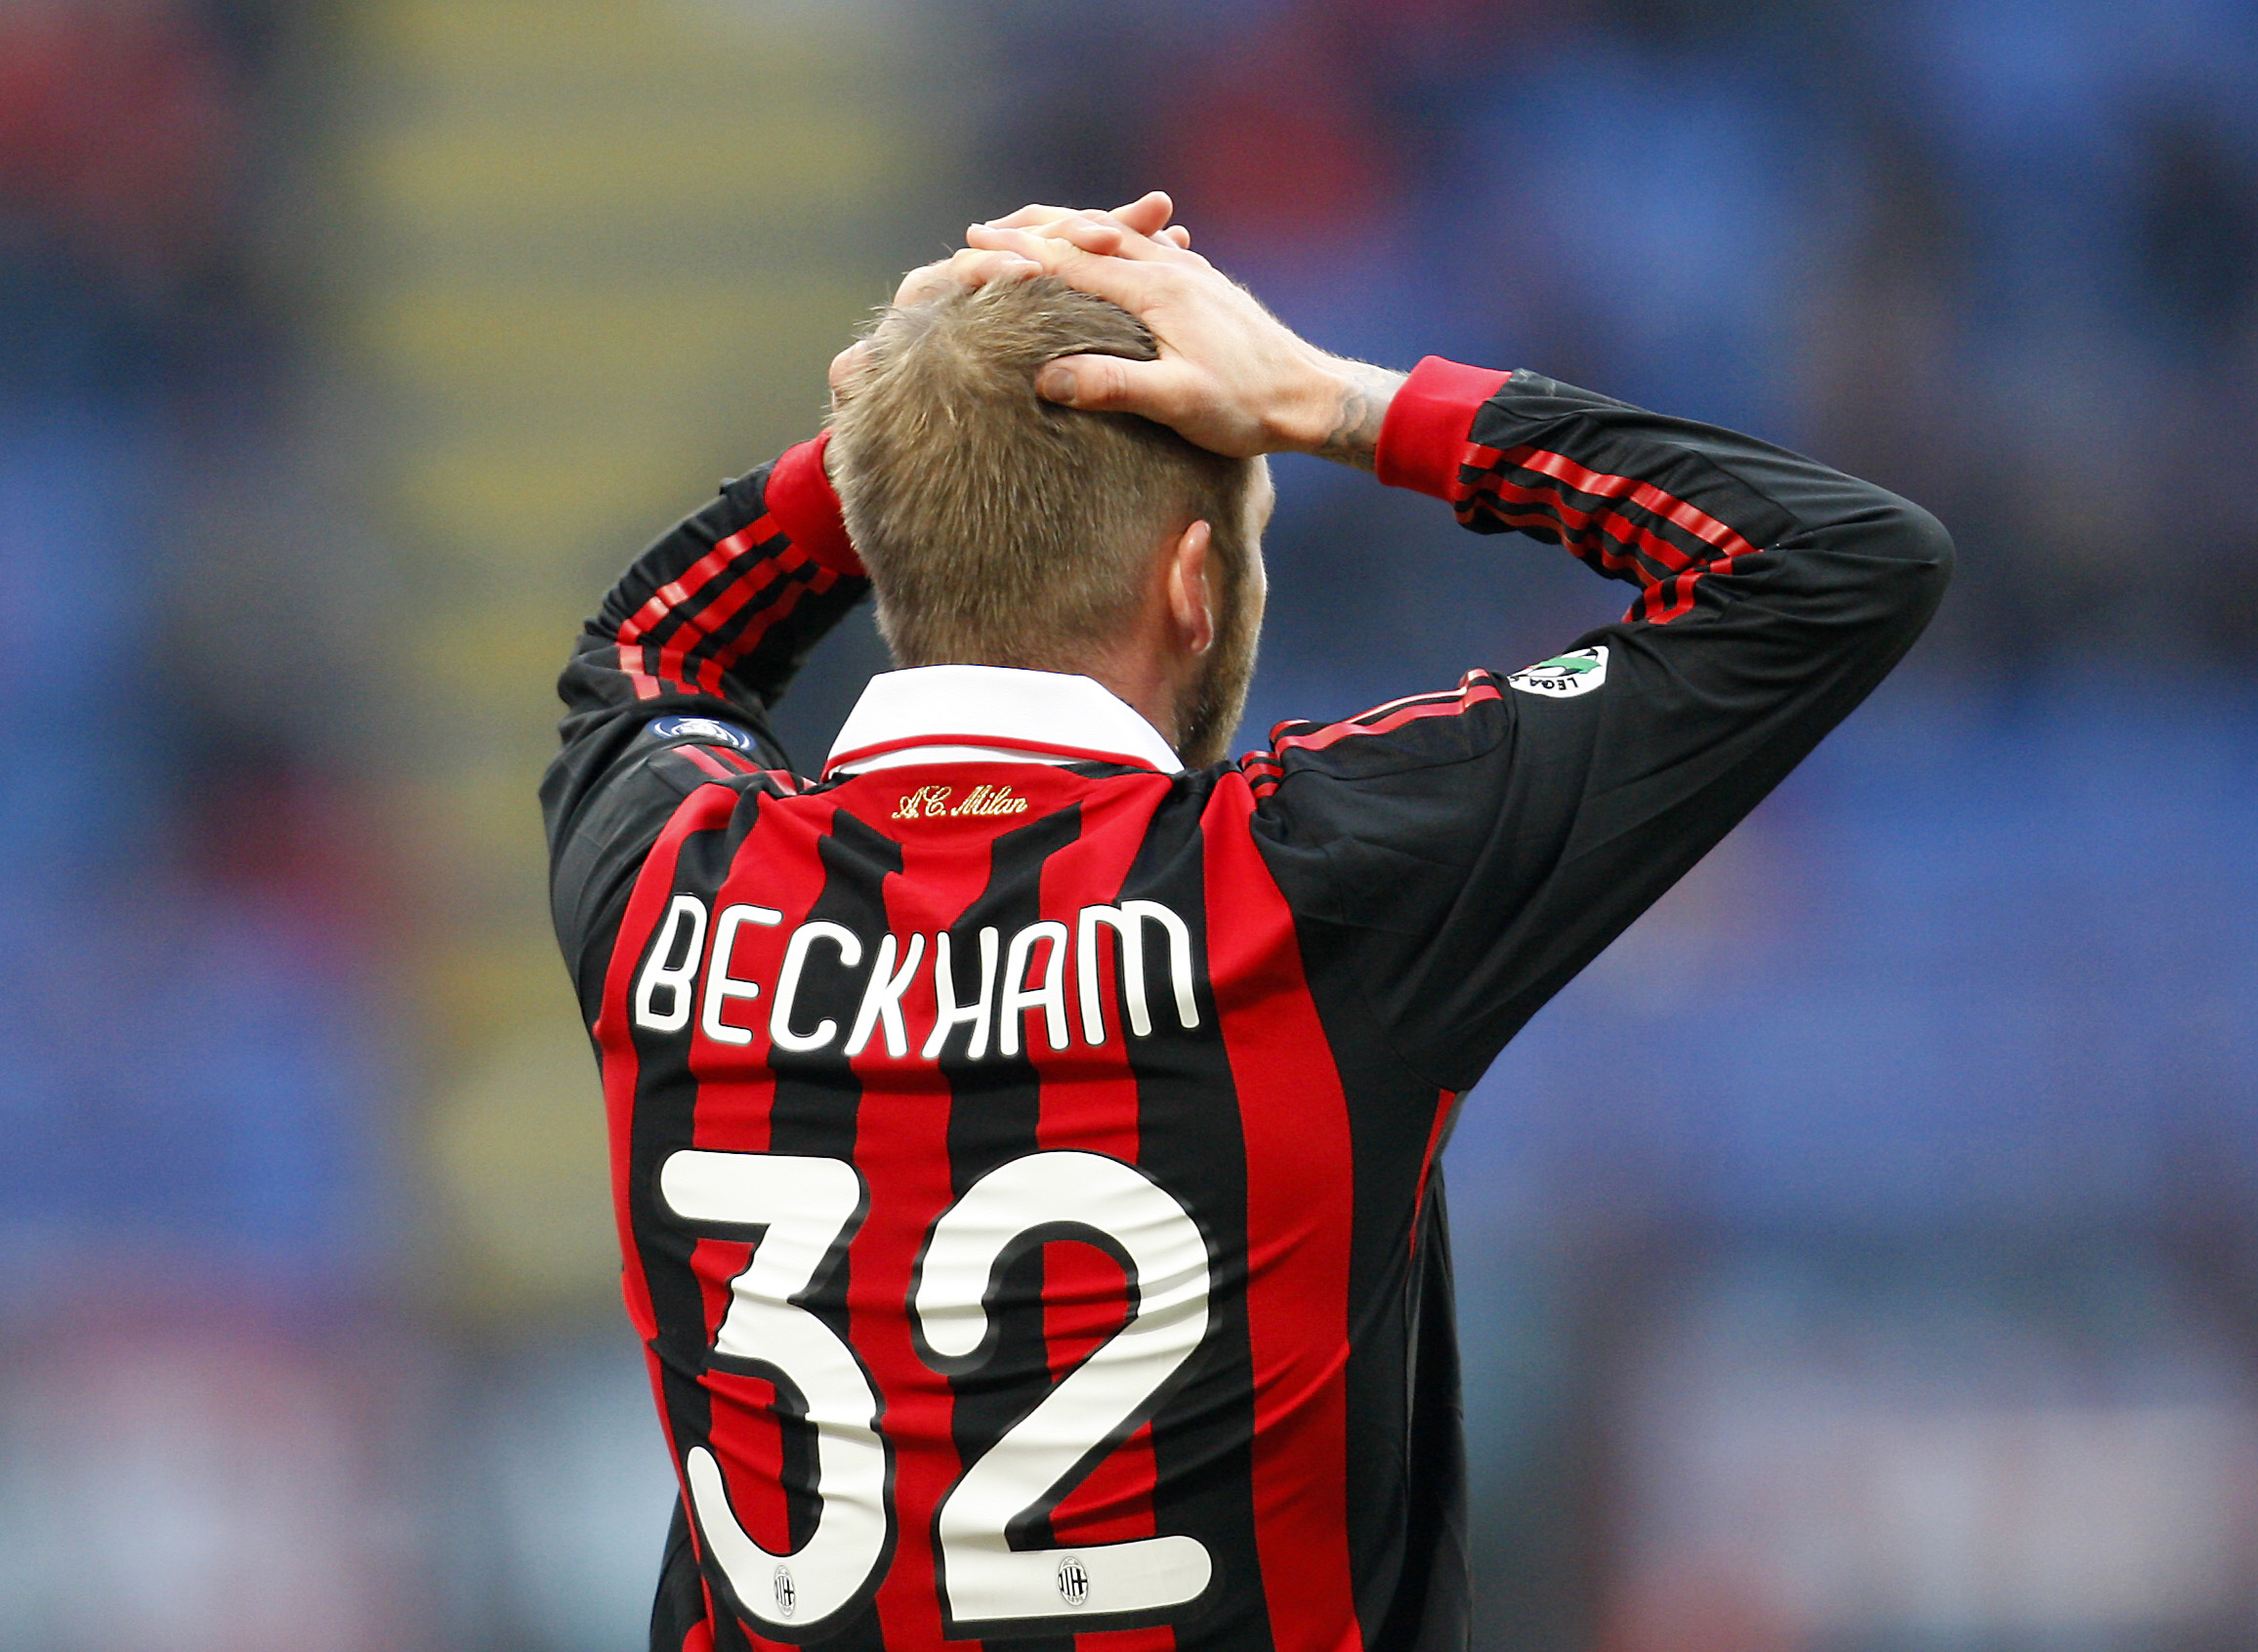 "Becks" i Milan, den senaste (sista?) klubb han representerade i Europa.